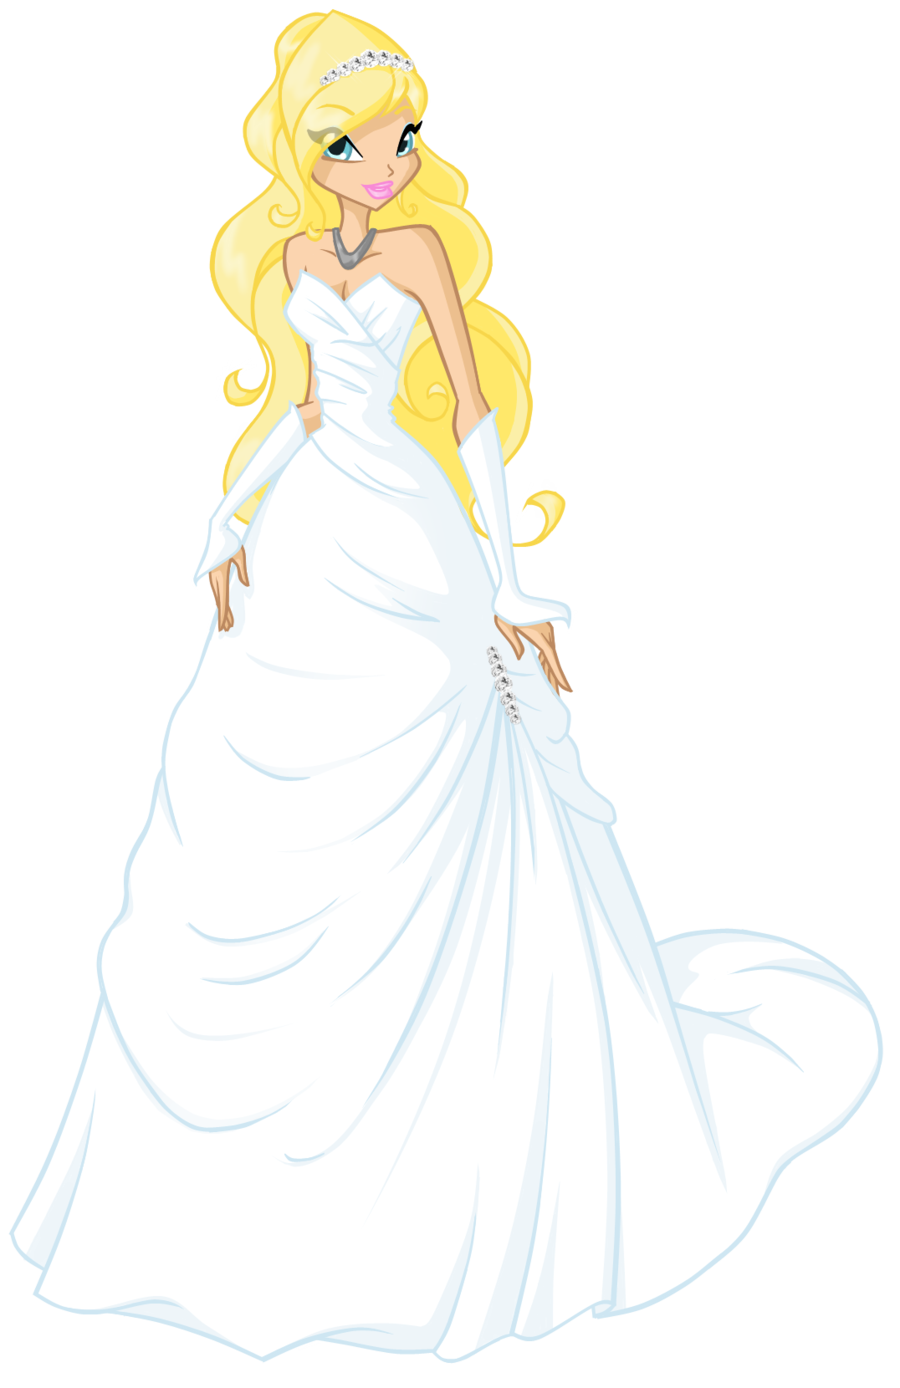 Cartoon wedding dress alot. Clipart clothes princess